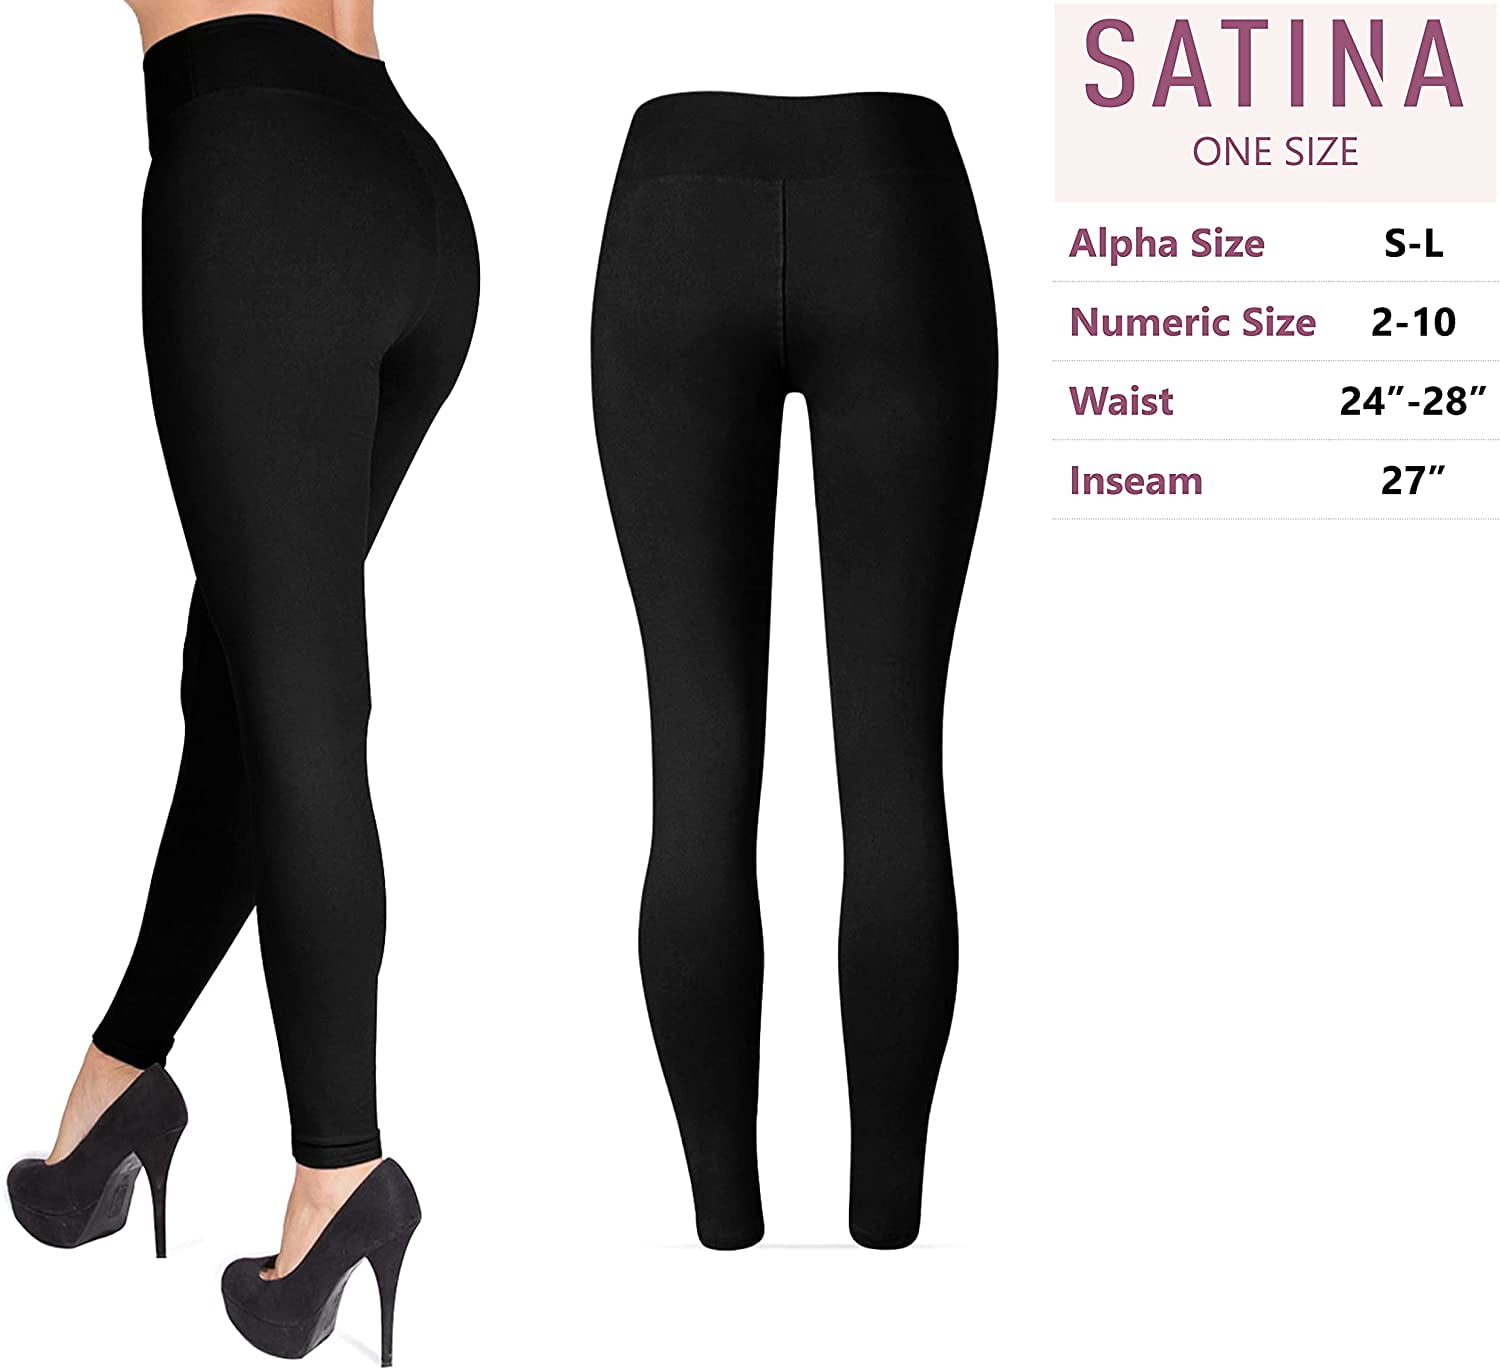 Soft Women’s Leggings in Capri & Full Lengths Regular and Plus Sizes in 25 Colors SATINA High Waisted Leggings for Women